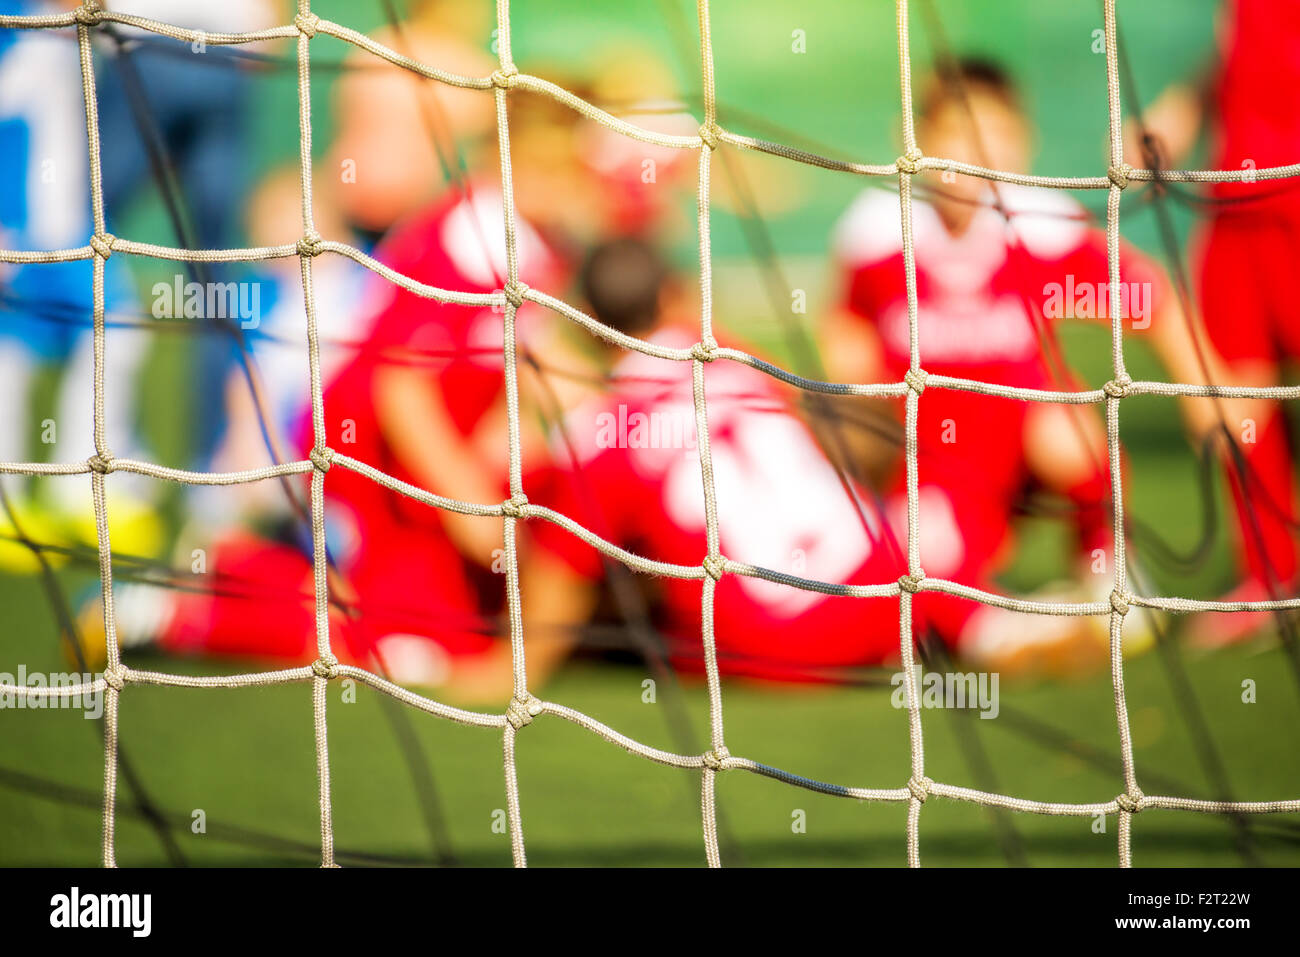 Kids Soccer team celebrare obiettivo e vittoria, defocussed blur sport immagine di sfondo Foto Stock